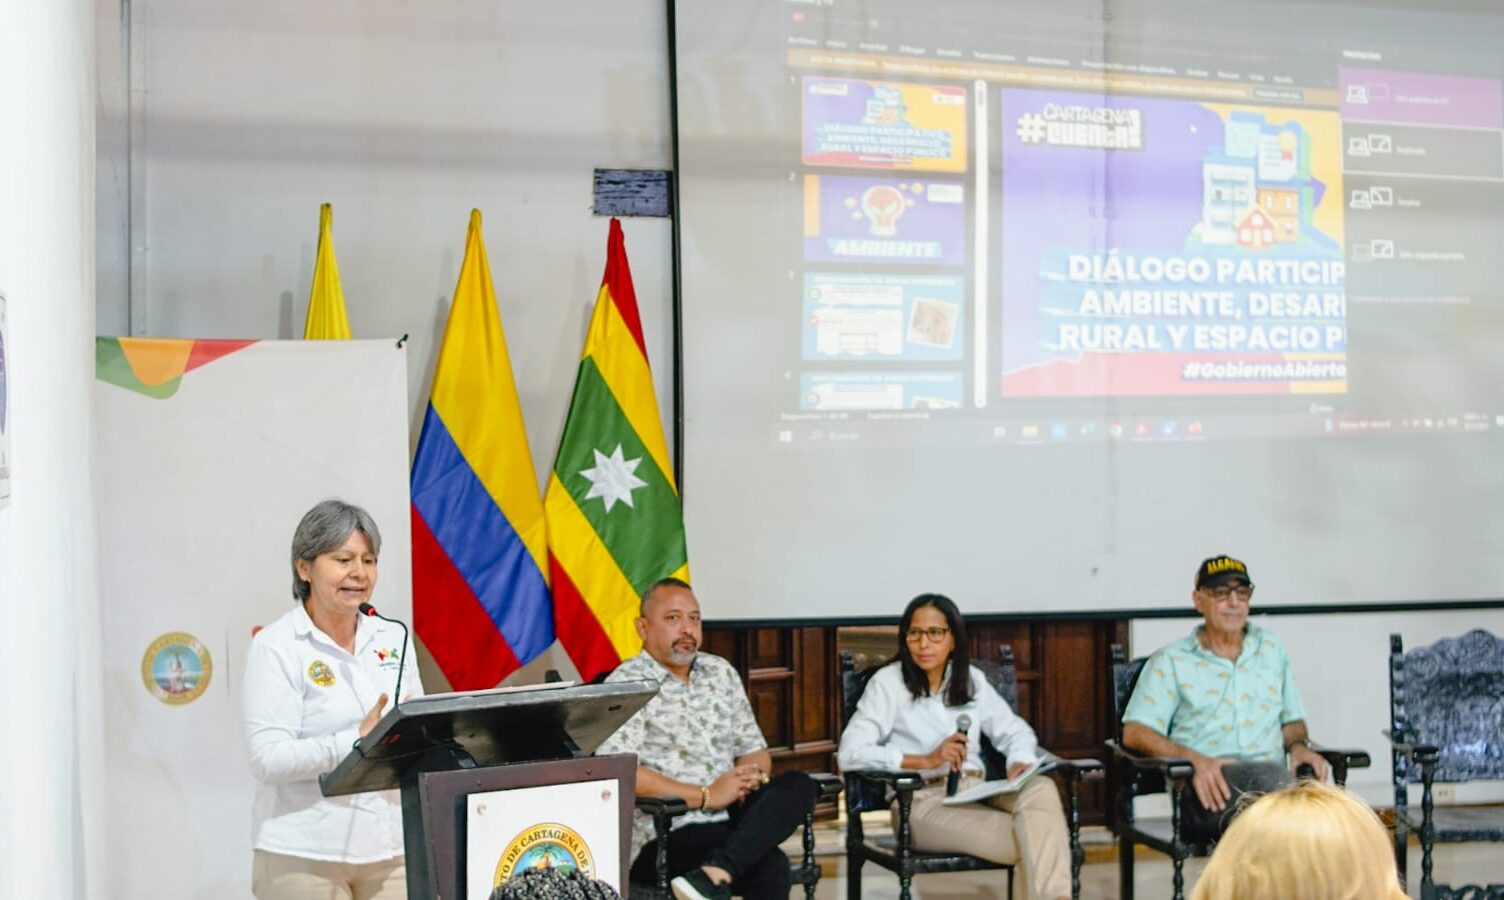 Directores de UMATA, EPA Cartagena, Espacio Público y alcalde de Cartagena en rendición de cuentas